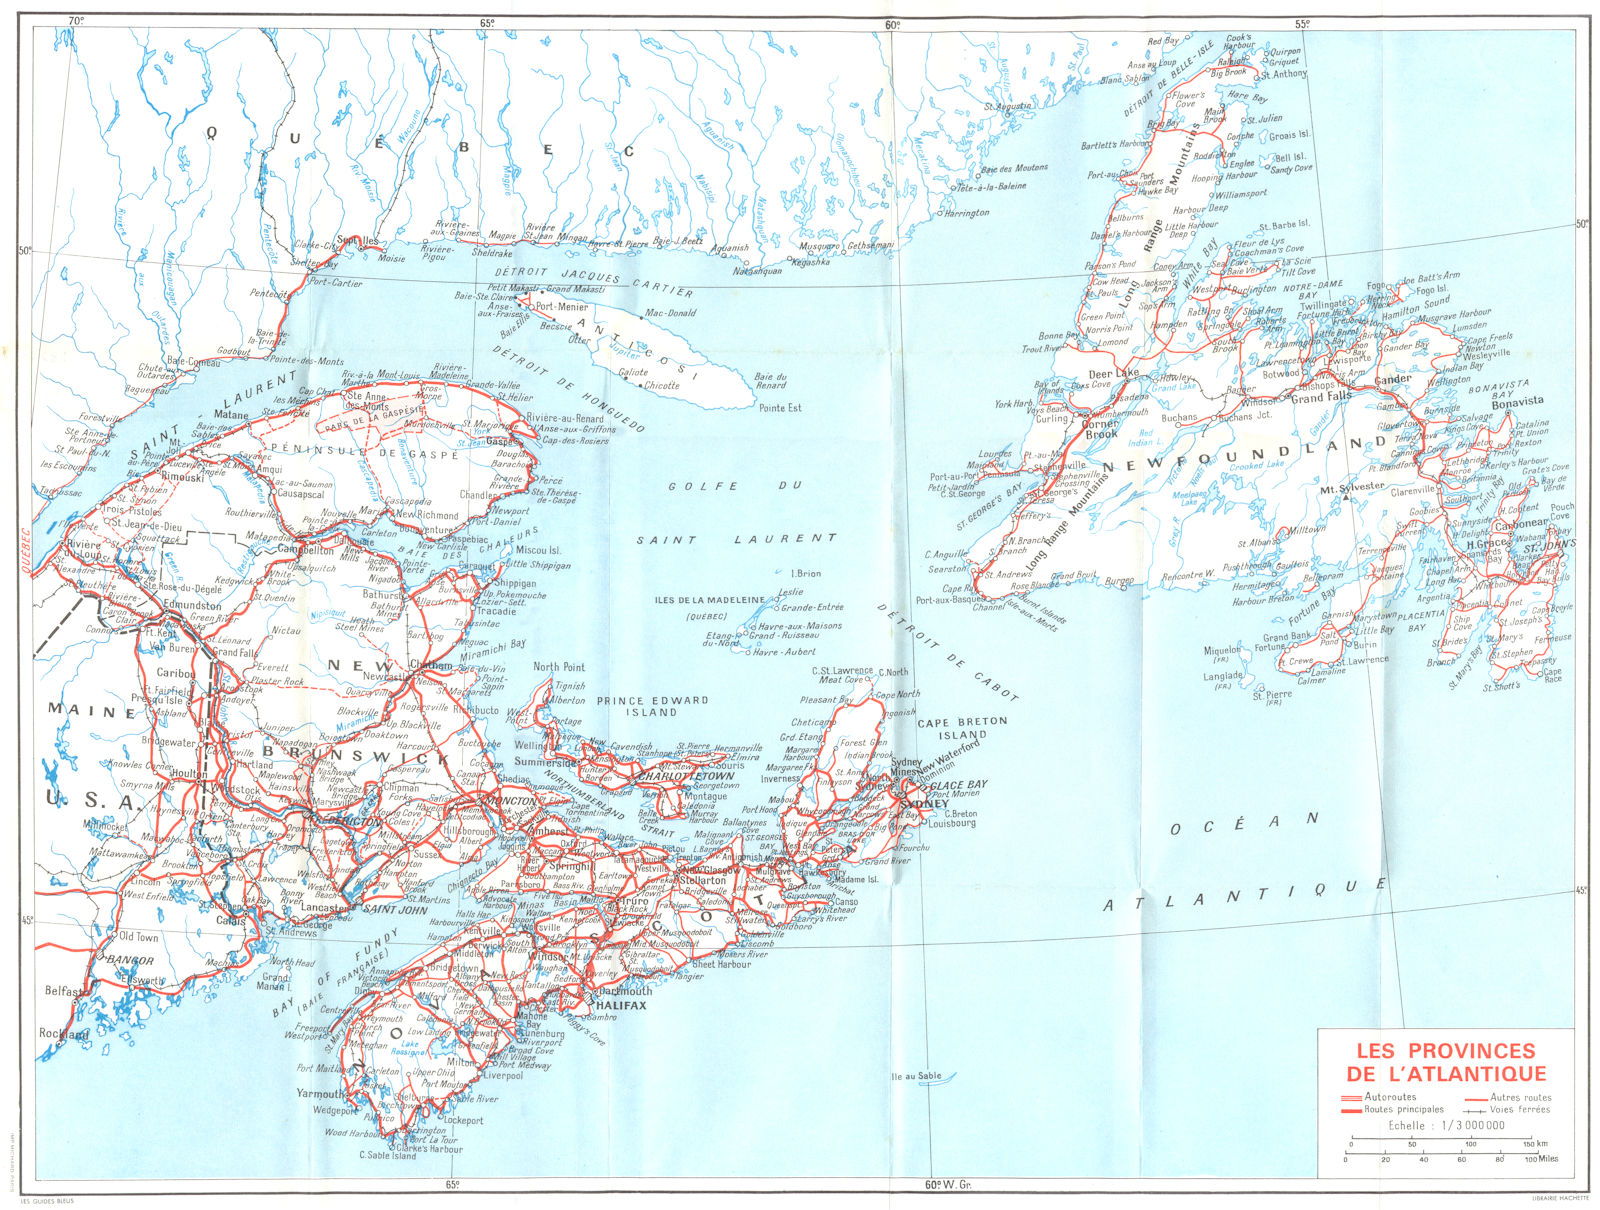 CANADA. Cotes Terre-Neuve. Provinces Atlantique 1967 old map chart